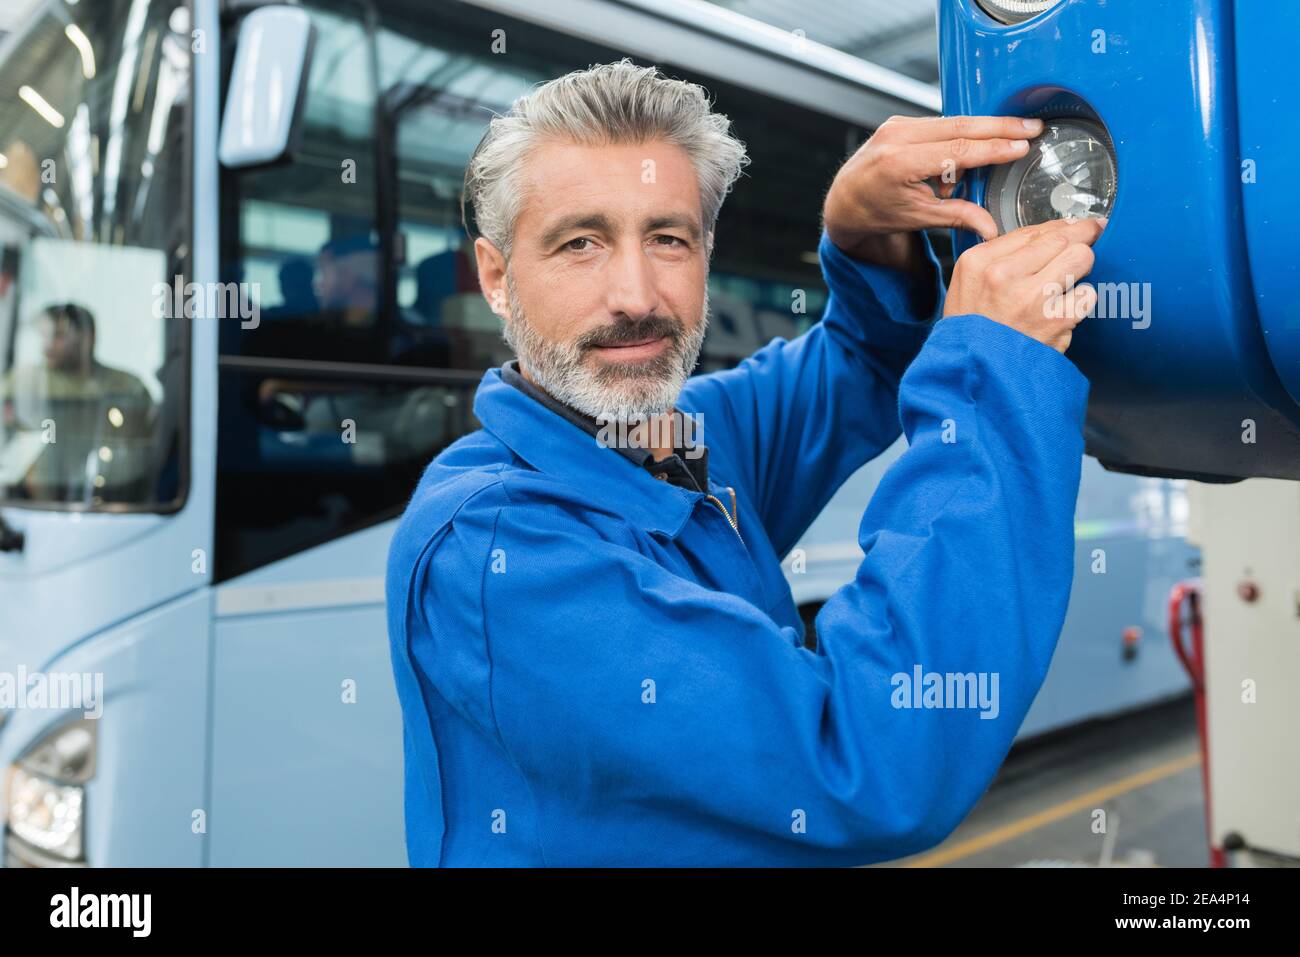 a man repairing a bus Stock Photo